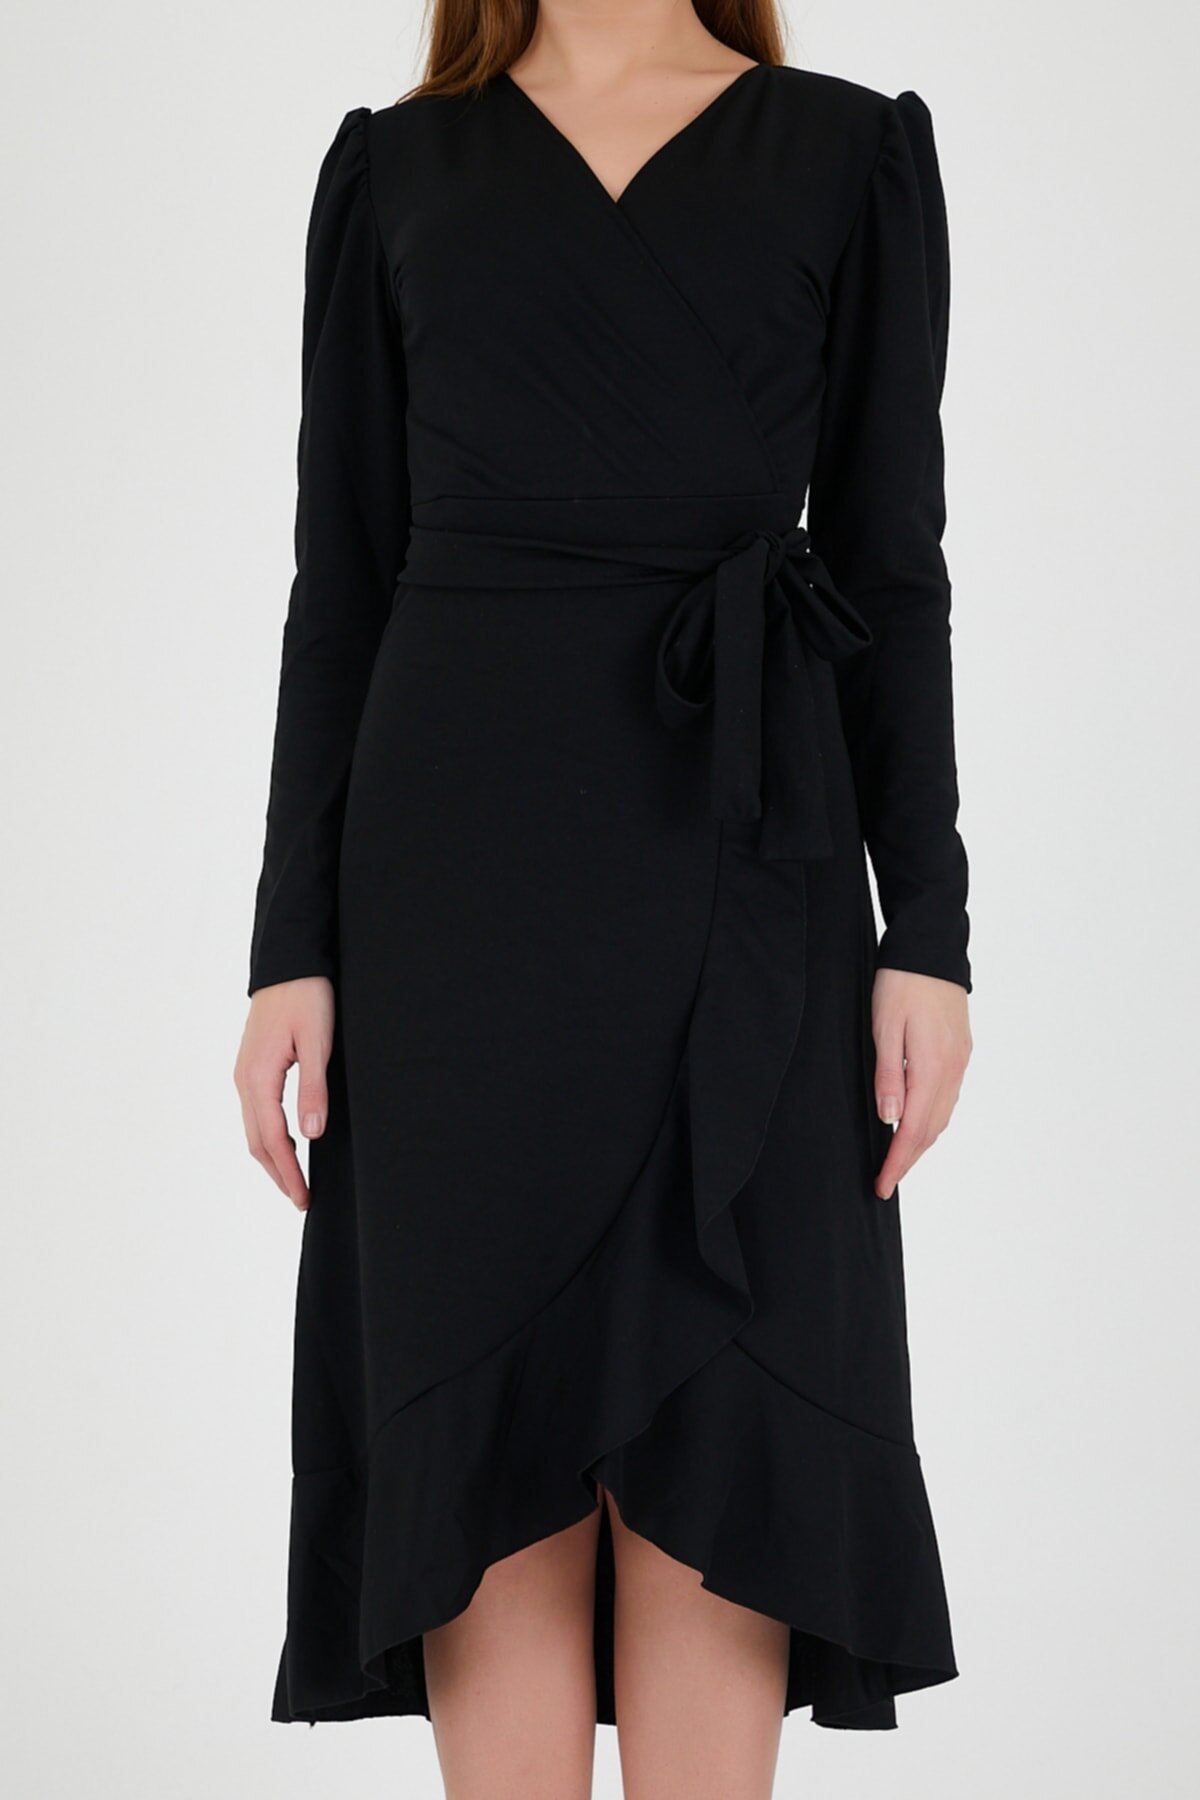 Kadın Krep Kumaş Midi Boy Kuşaklı Siyah Elbise 18D-5003